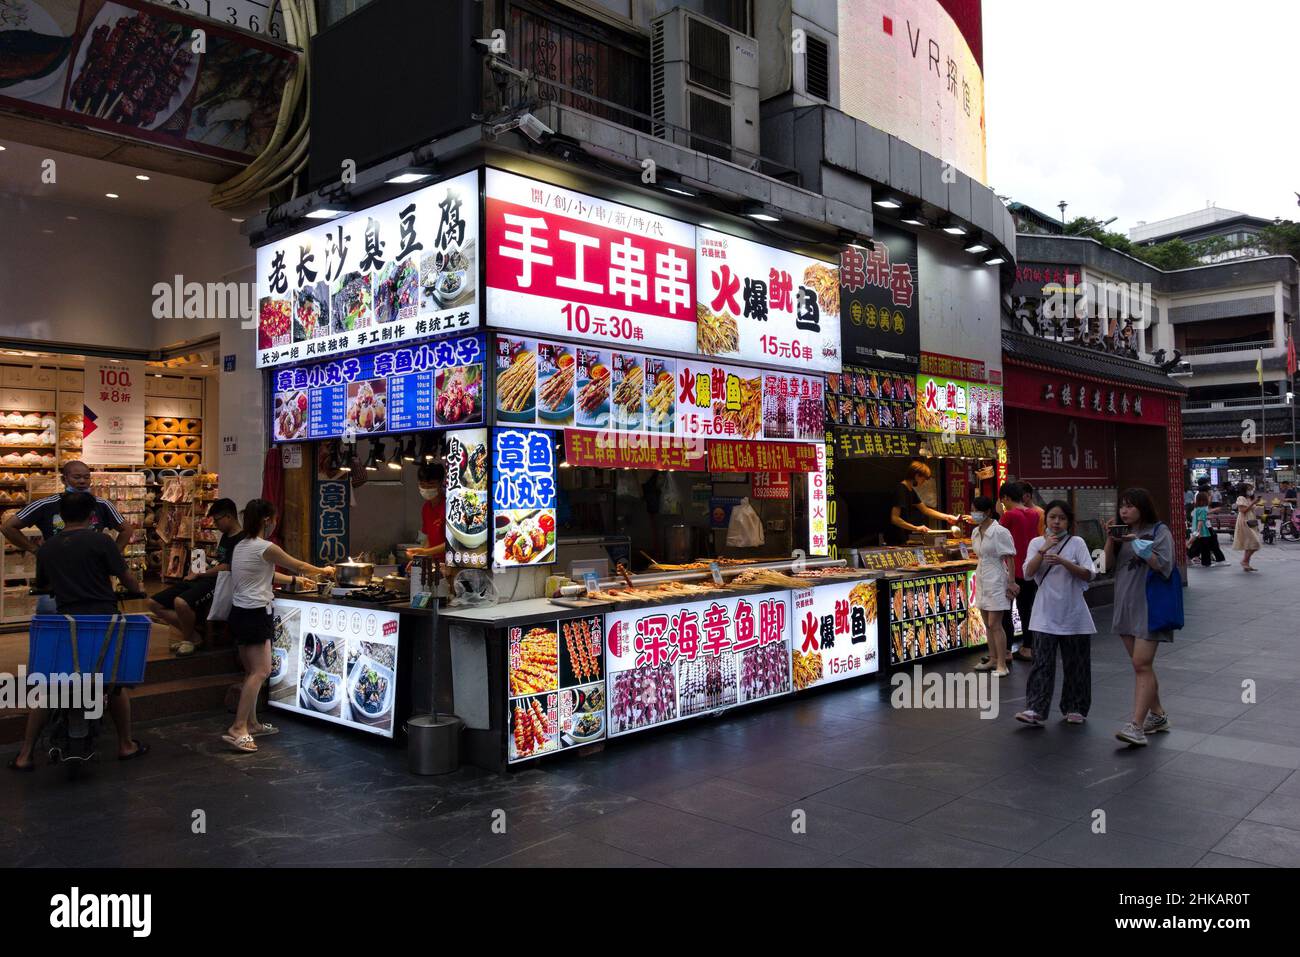 Puesto de comida al aire libre (el letrero se traduce como 'brochetas hechas a mano') en Shenzhen, China Foto de stock